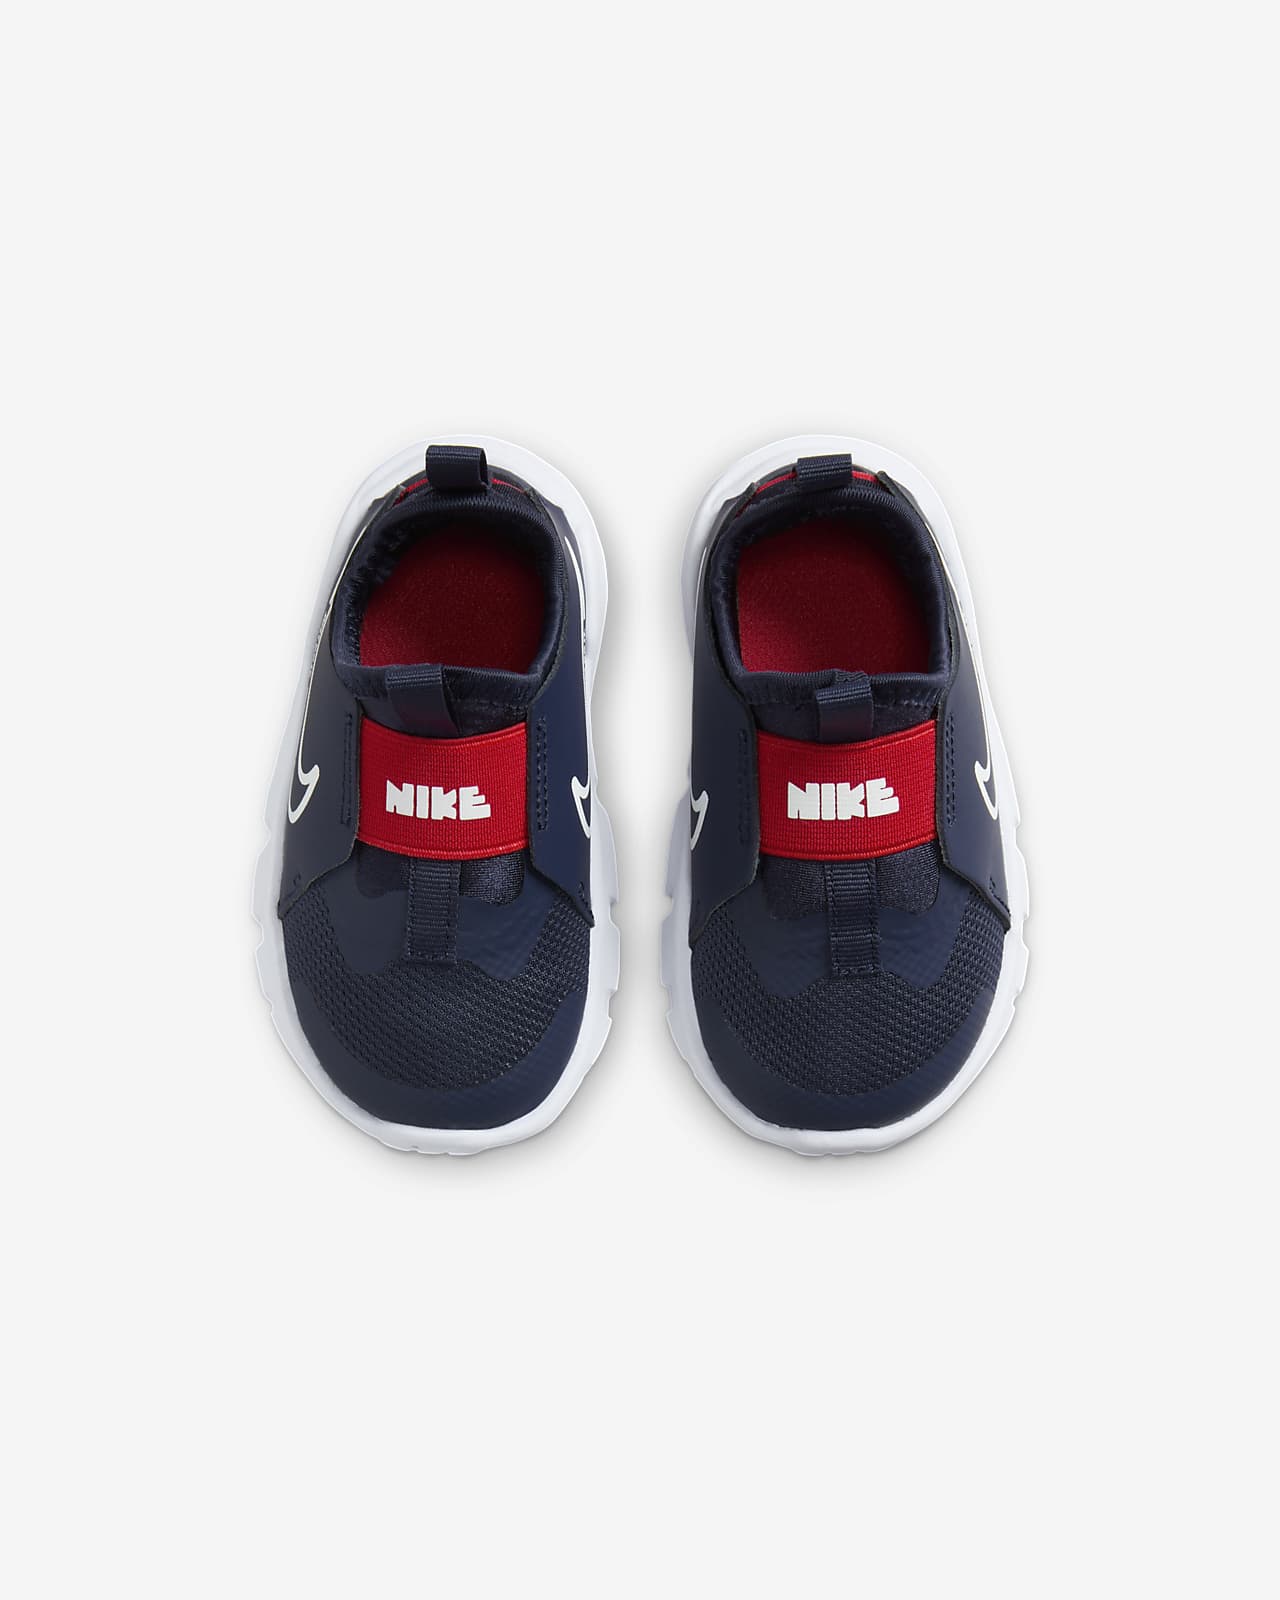 Nike Flex Runner Baby/Toddler Shoes. 2